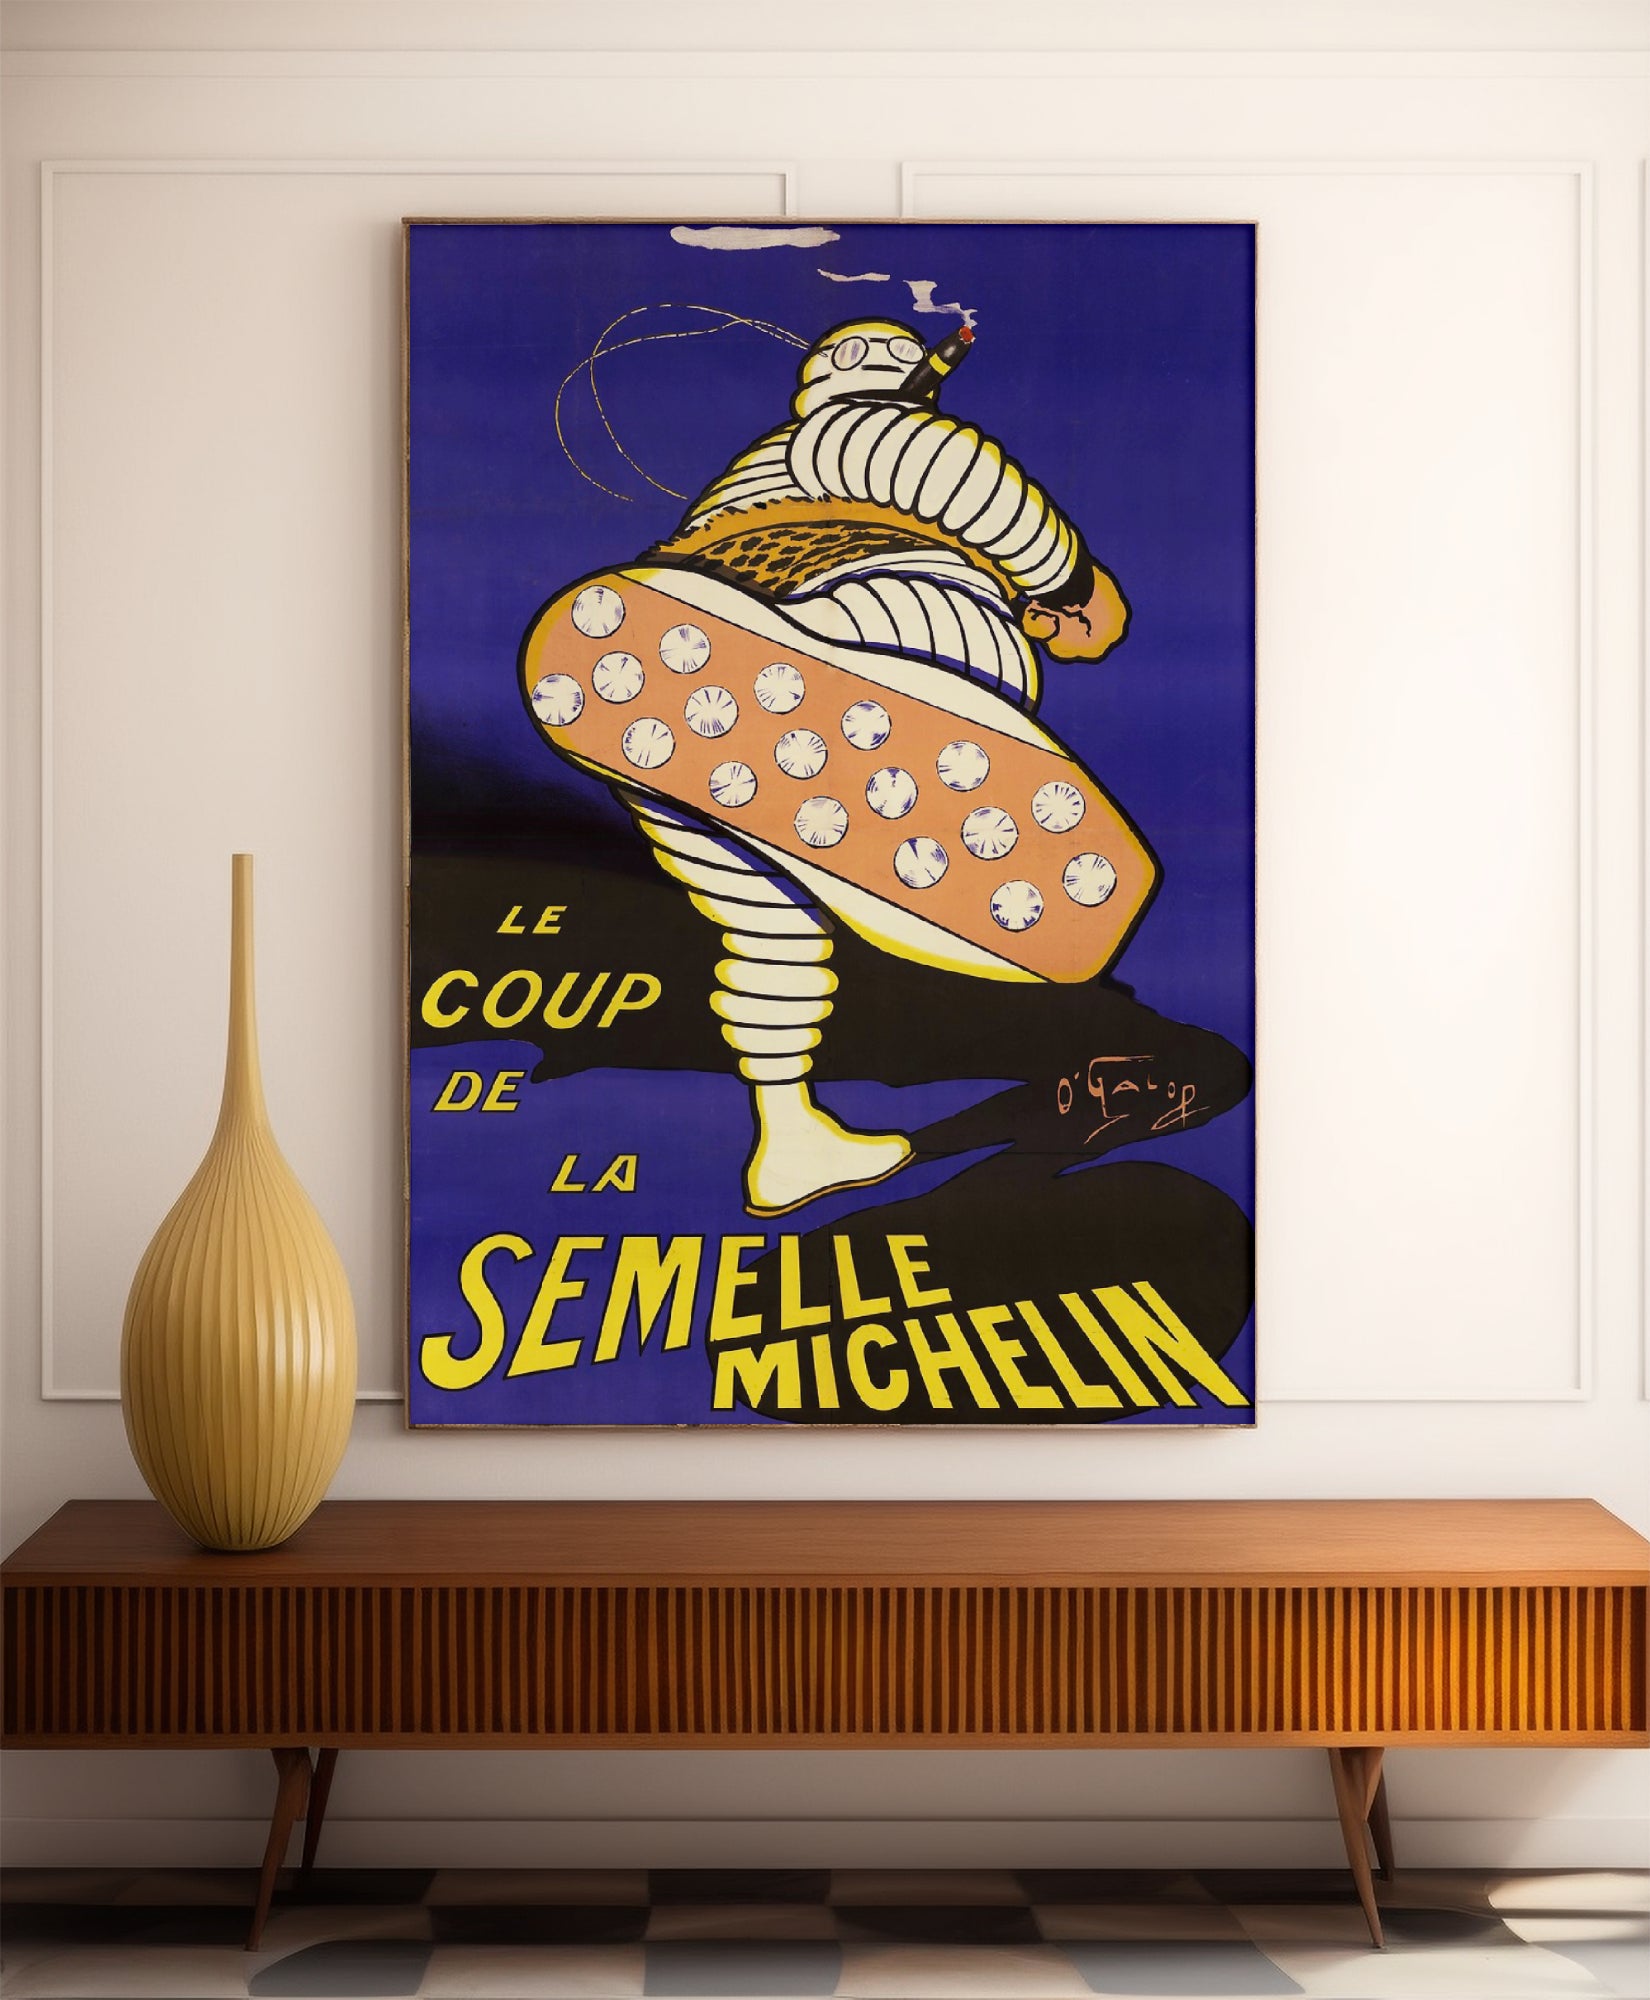 Affiche publicitaire vintage "Semelle Michelin" - O'Galop - Haute Définition - papier mat 230gr/m²